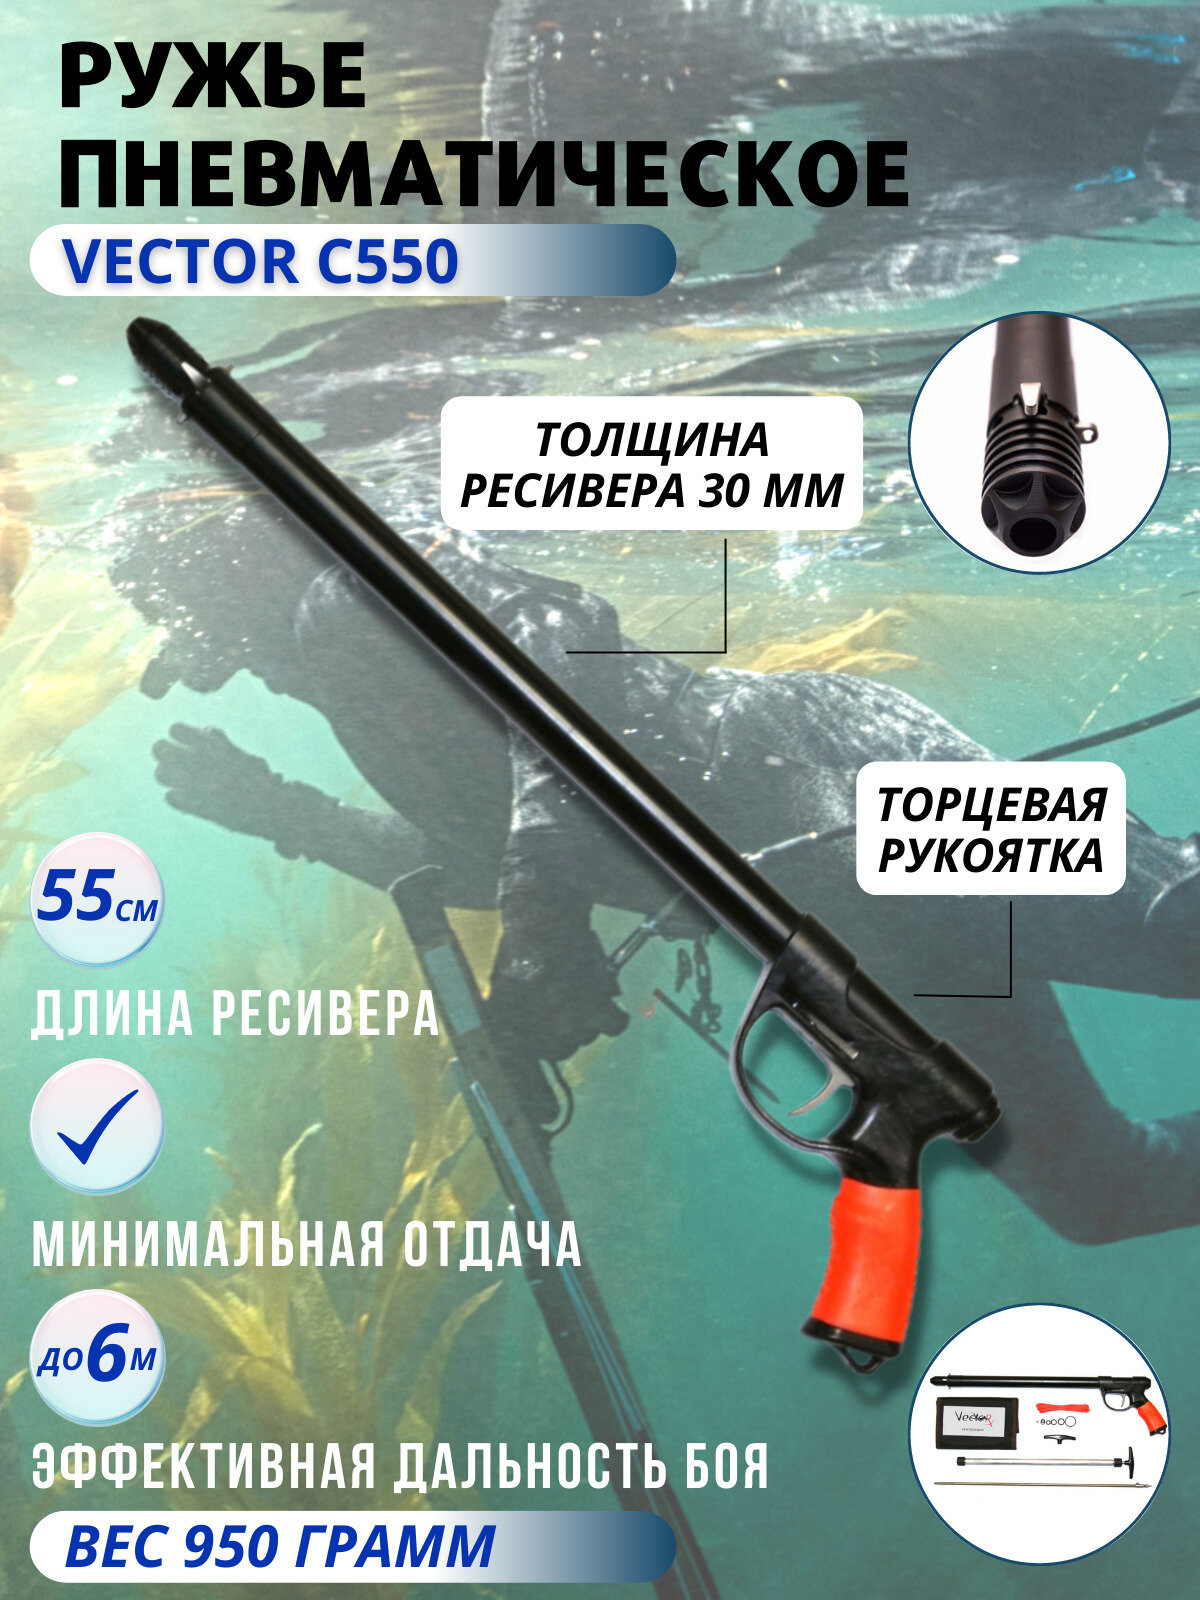 Ружье пневматическое для подводной охоты VECTOR C 550, торцевая рукоятка